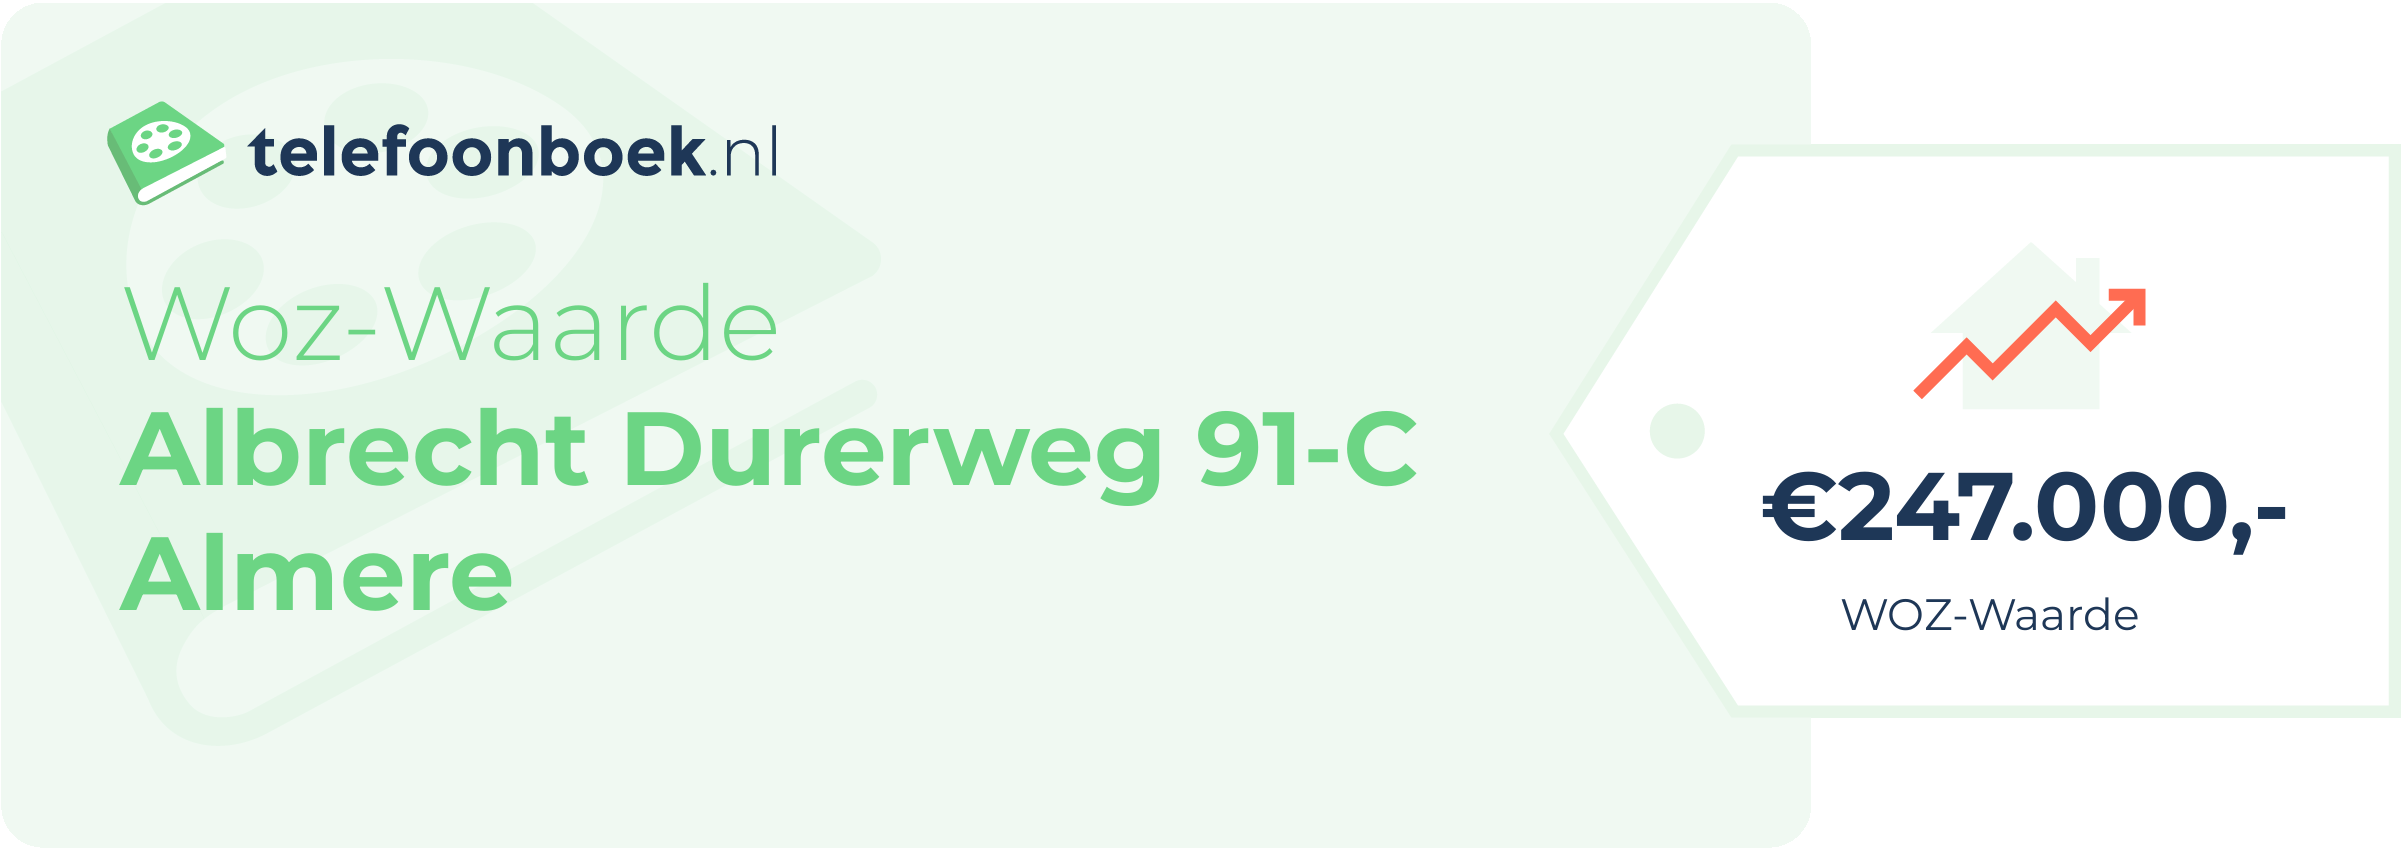 WOZ-waarde Albrecht Durerweg 91-C Almere